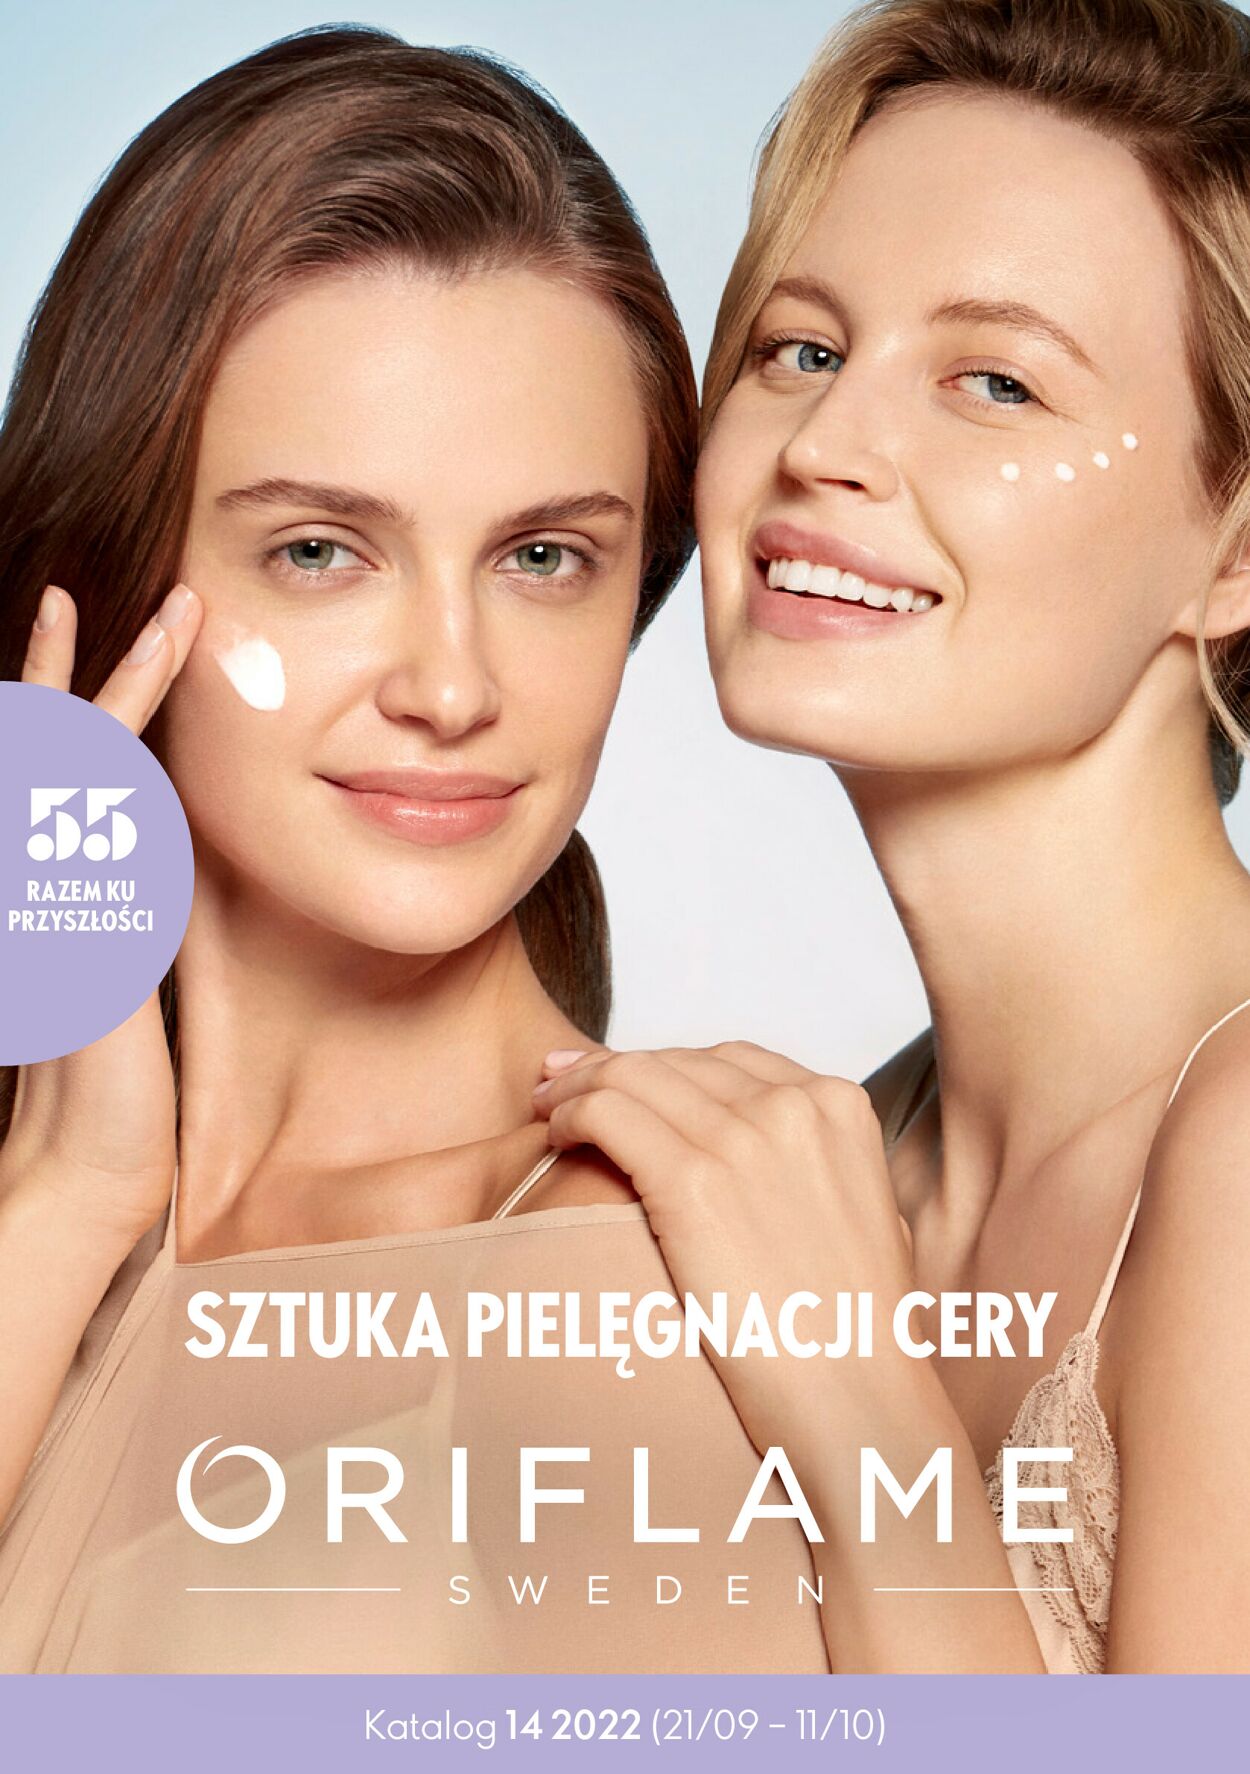 Gazetka promocyjna Oriflame - 21.09-11.10.2022